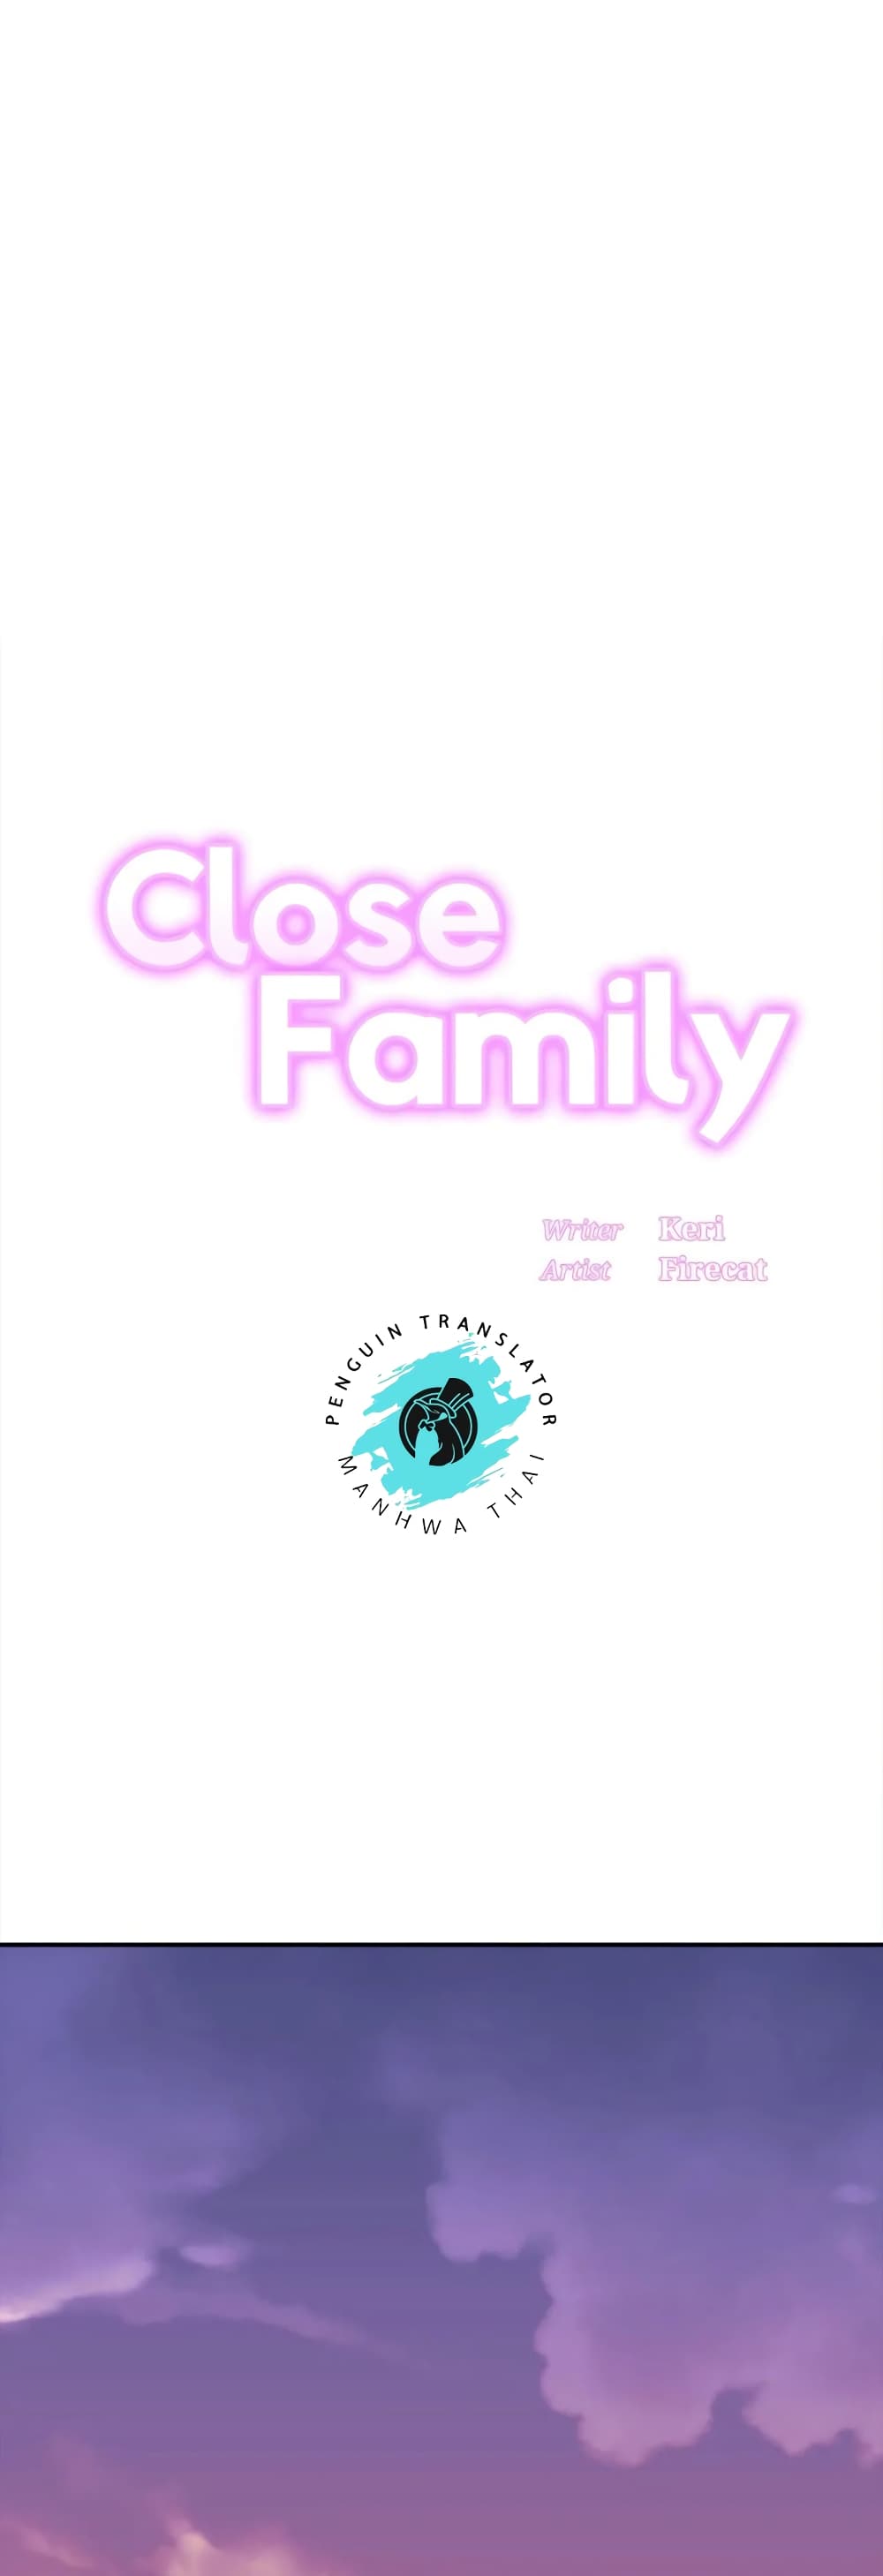 Close Family 48 01